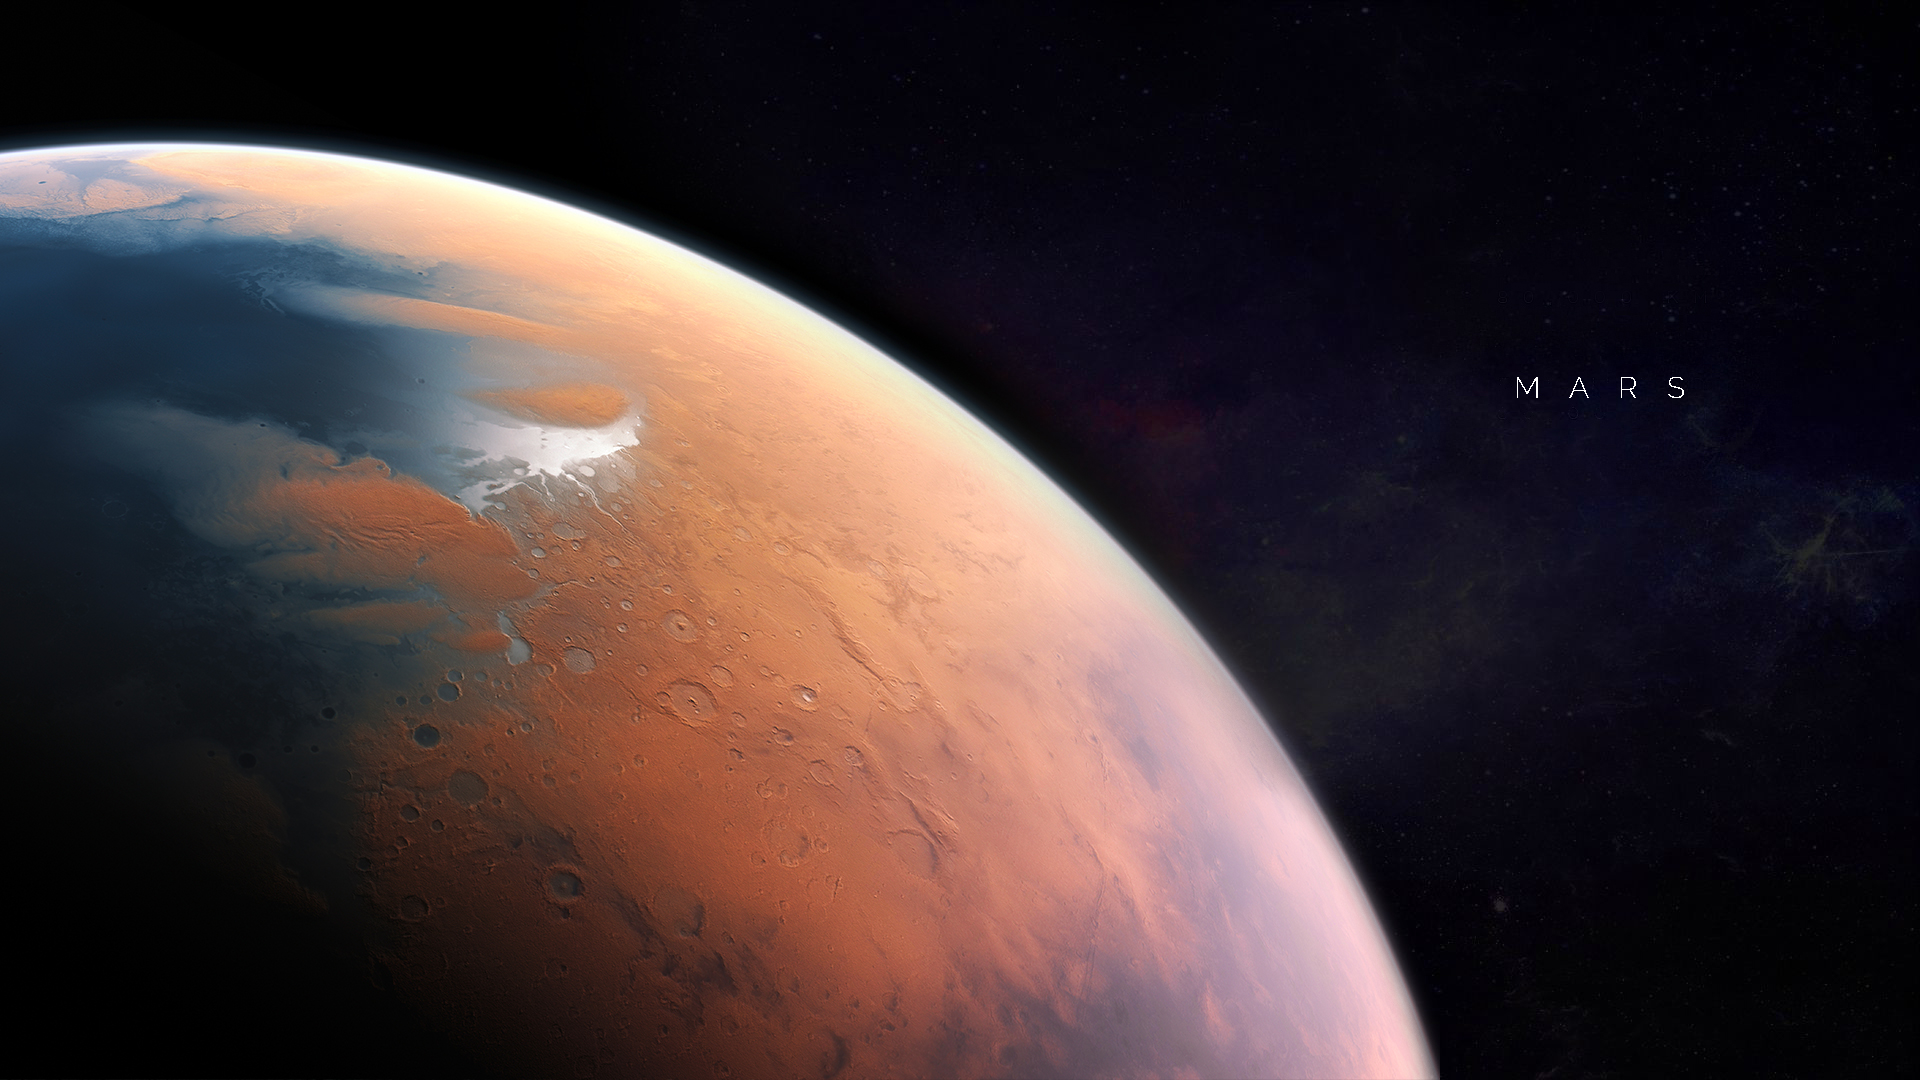 Обои Пустынная планета марс картинки на рабочий стол на тему Космос - скачать бесплатно